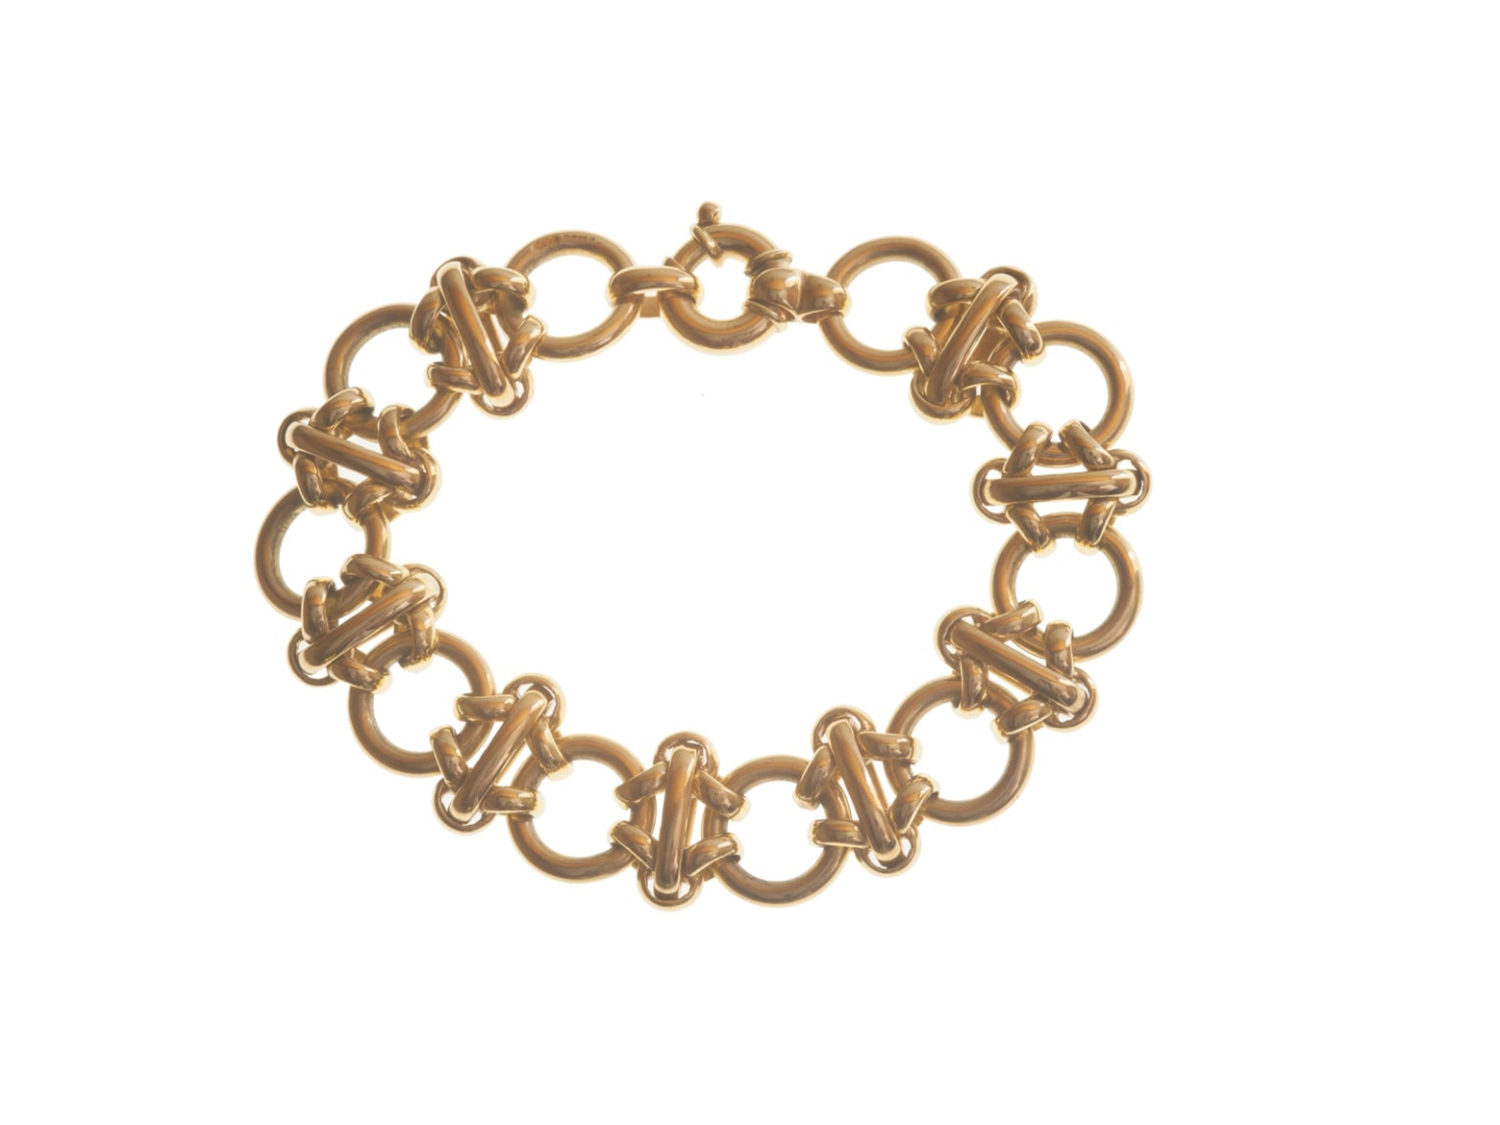 Vintage gold link bracelet — Jewellery Discovery